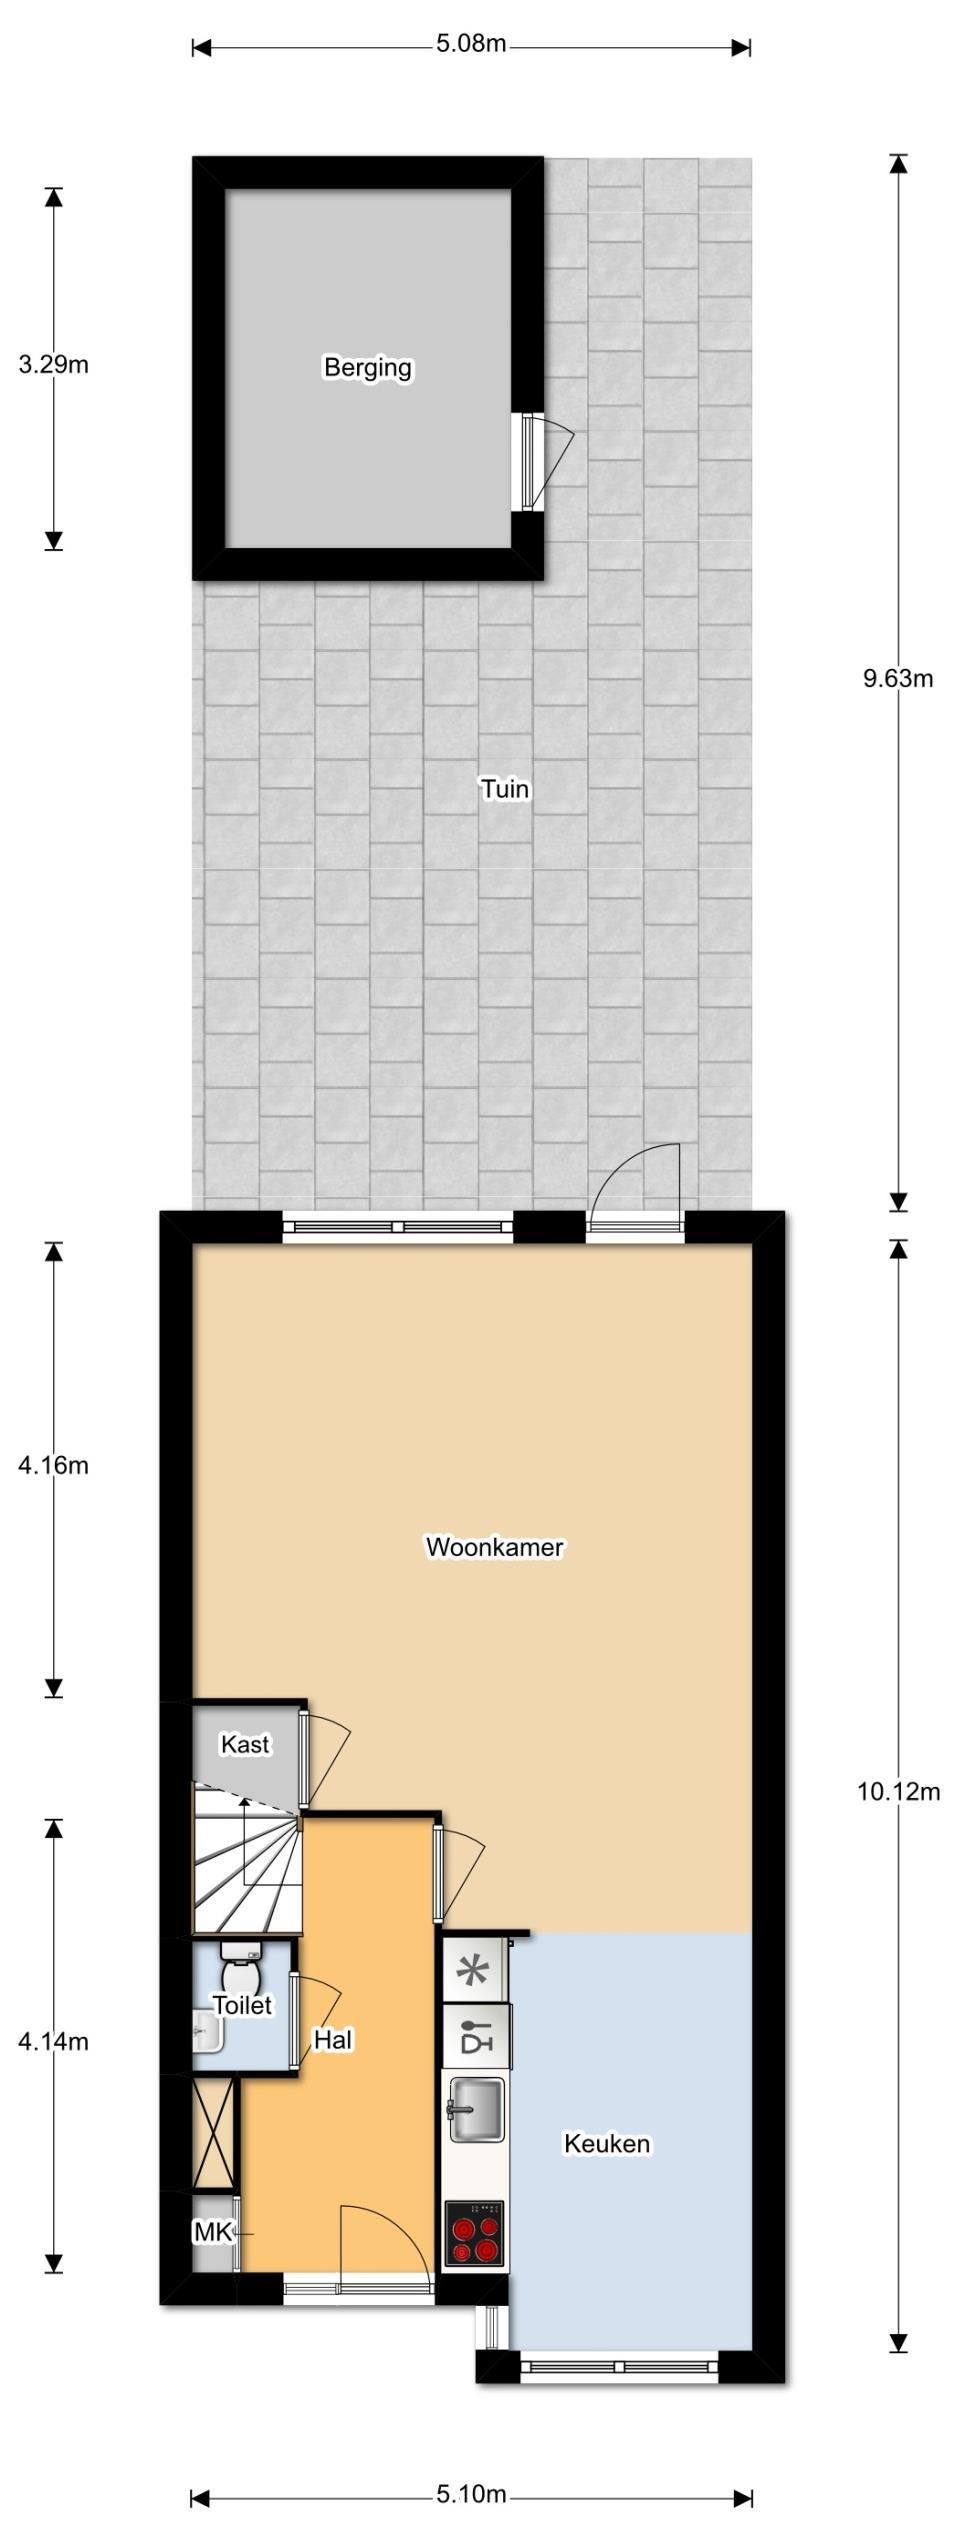 Begane grond: Een ruime entree/hal met meterkast, laminaatvloer en spachtelputz wandafwerking geeft toegang tot de woning.